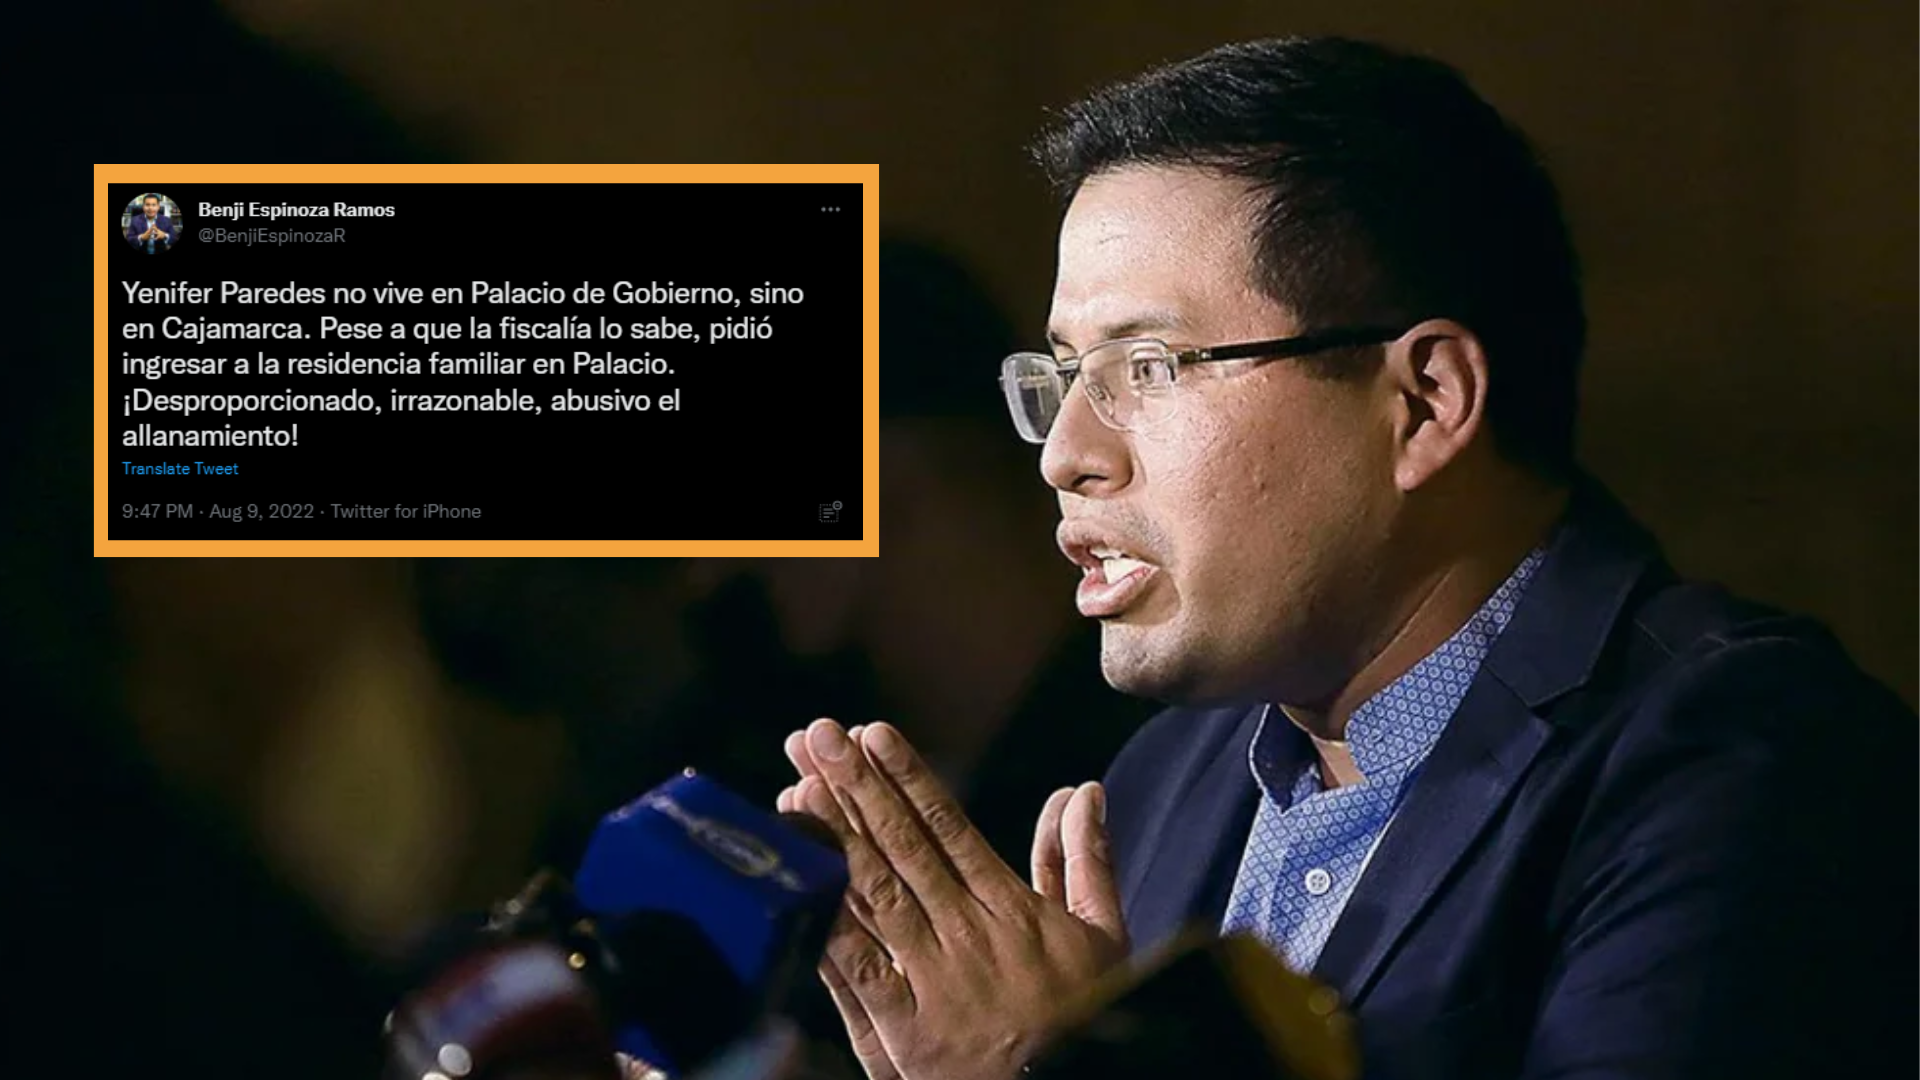 Benji Espinoza califica de “abusivo” y “desproporcionado” la diligencia contra Yenifer Paredes